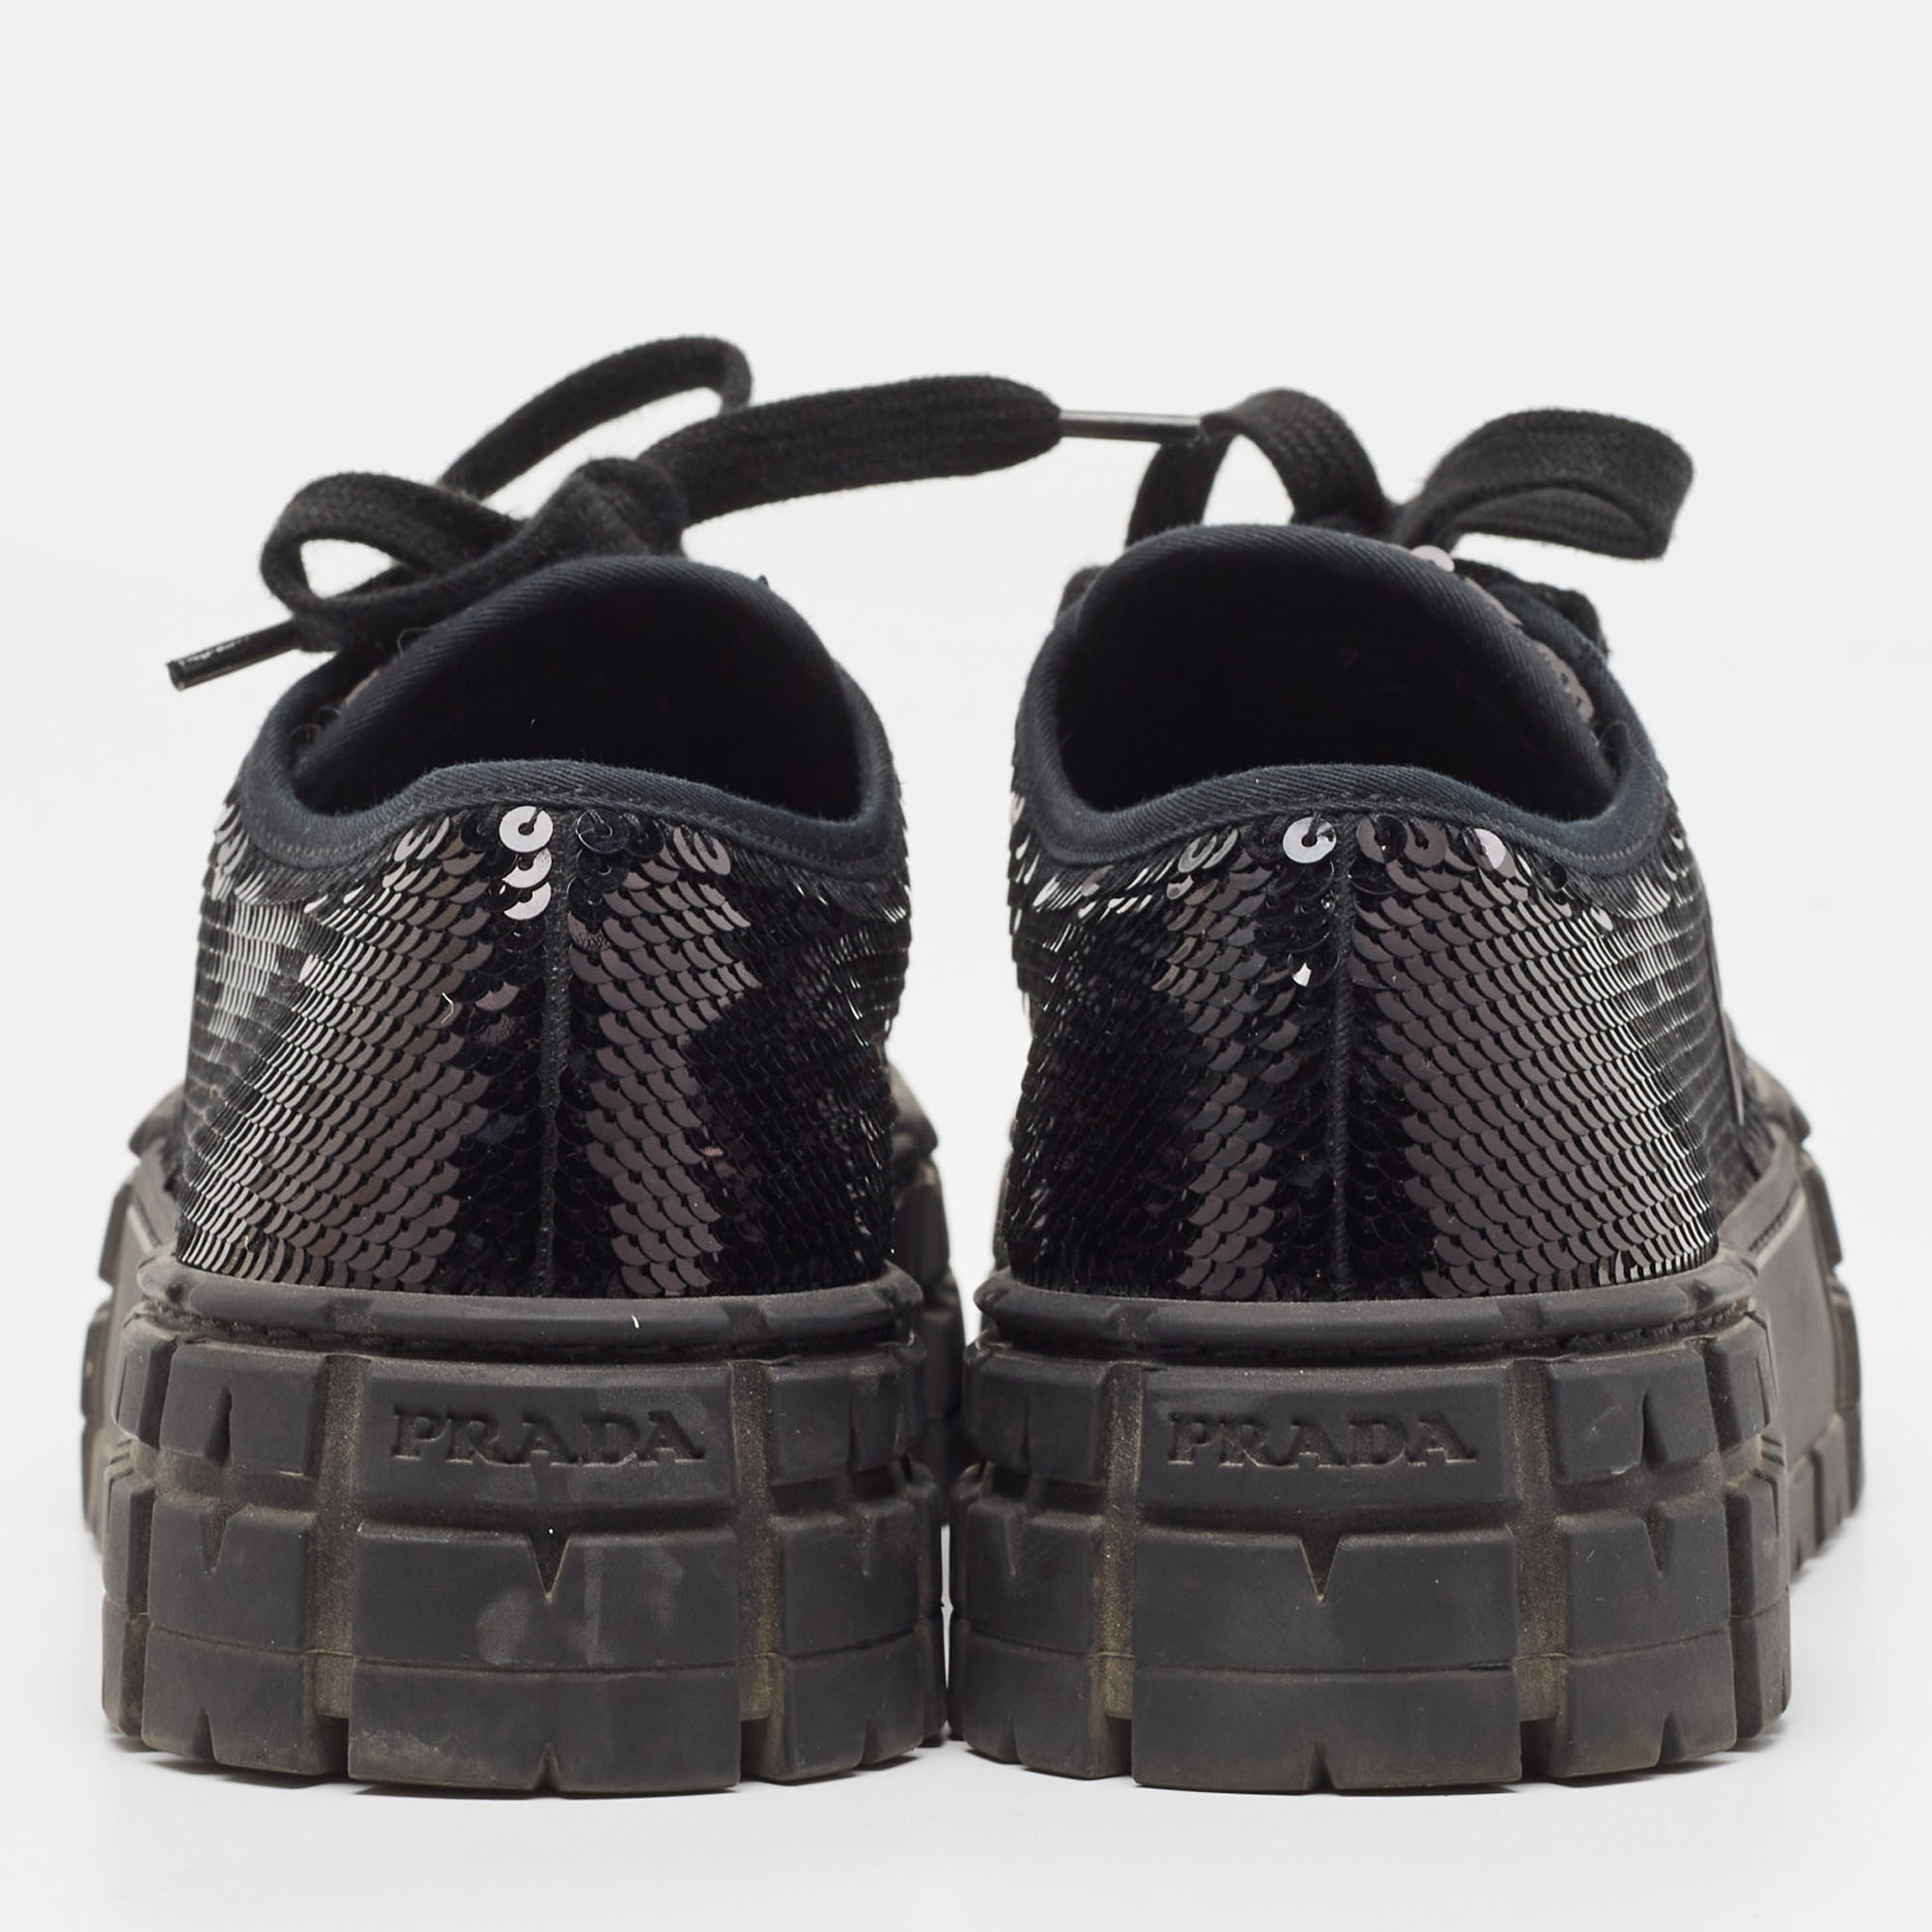 Prada Black Sequin Double Wheel Platform Sneakers Size 37.5